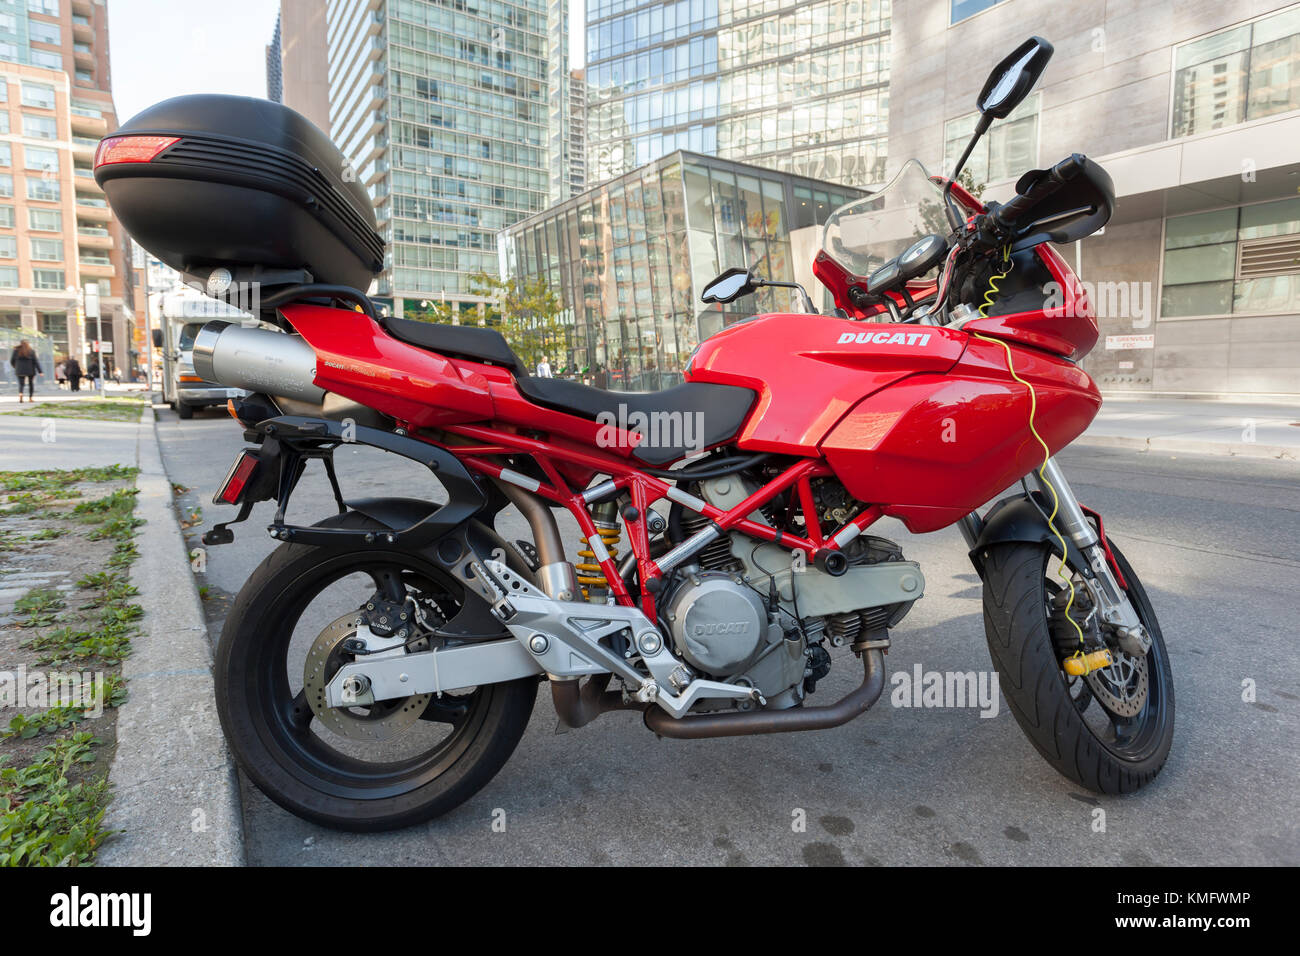 Toronto, Canada - 19 OTT 2017: Ducati Multistrada moto parcheggiata in una strada del centro di Toronto, Canada Foto Stock